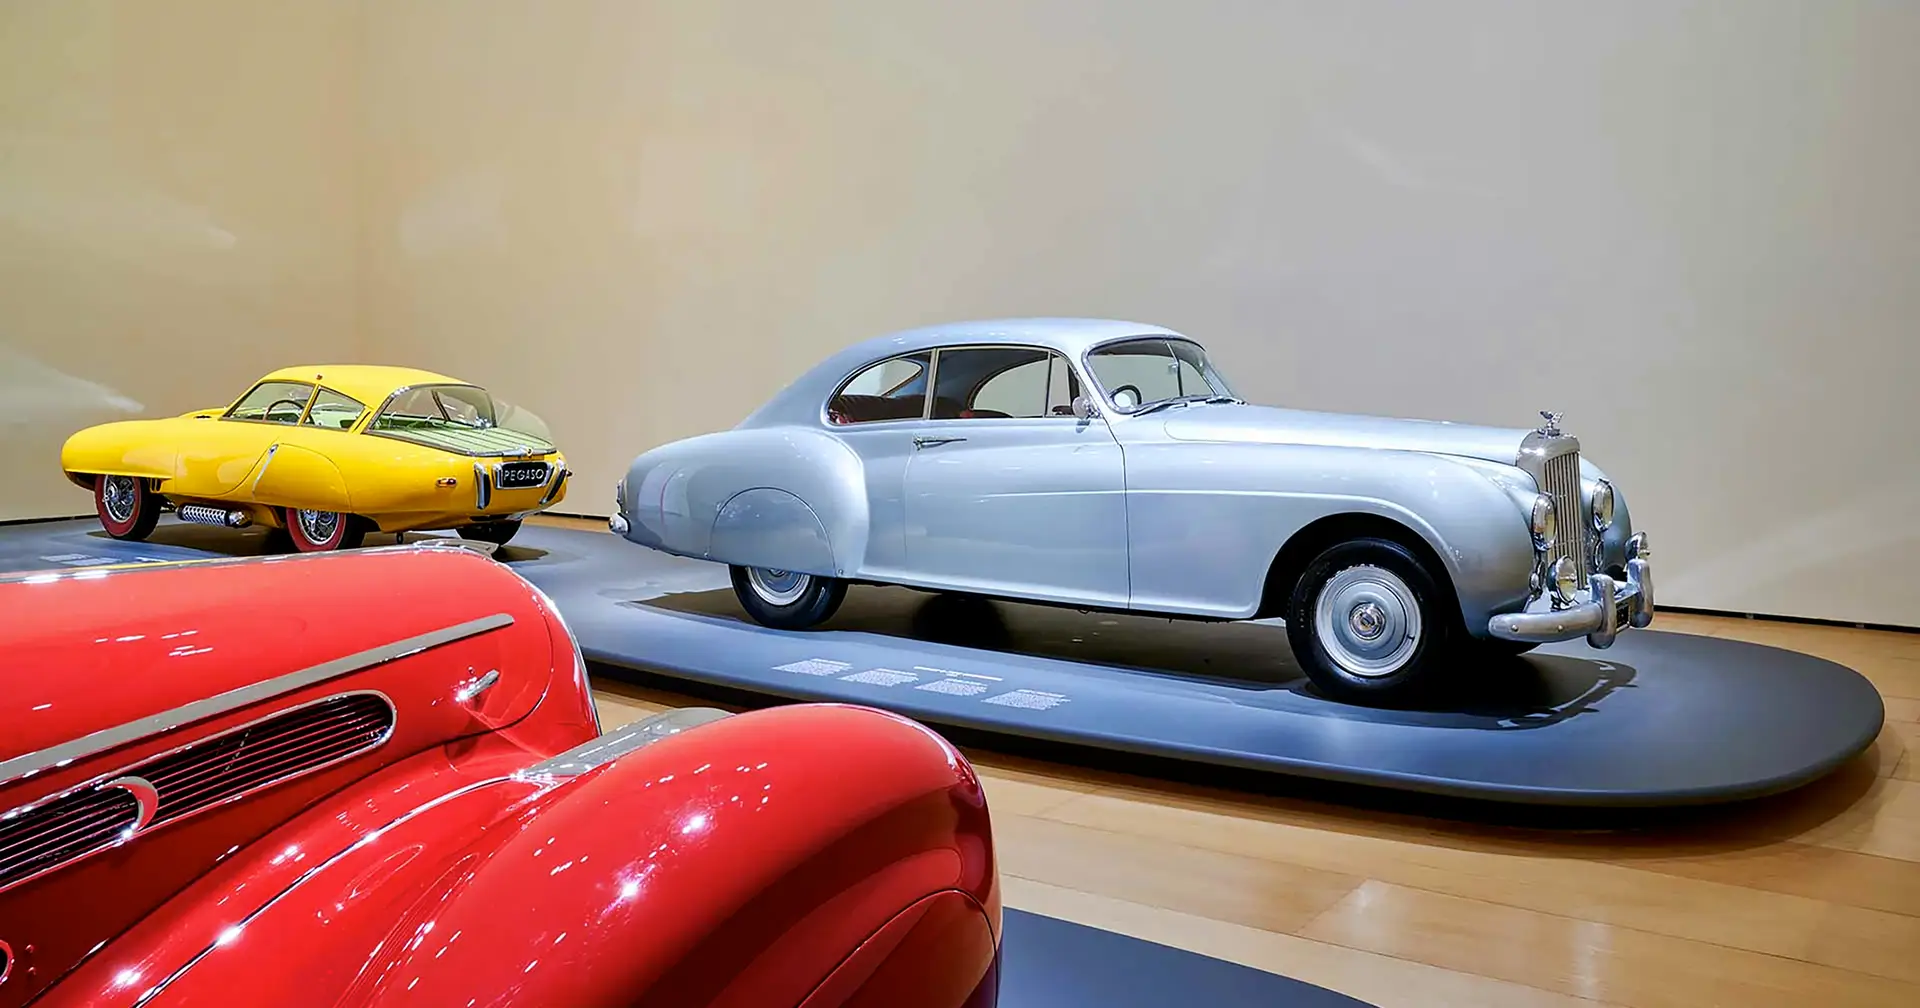 Exposição inédita no Guggenheim de Bilbau coloca os automóveis no centro das atenções. São 200 anos de paixão